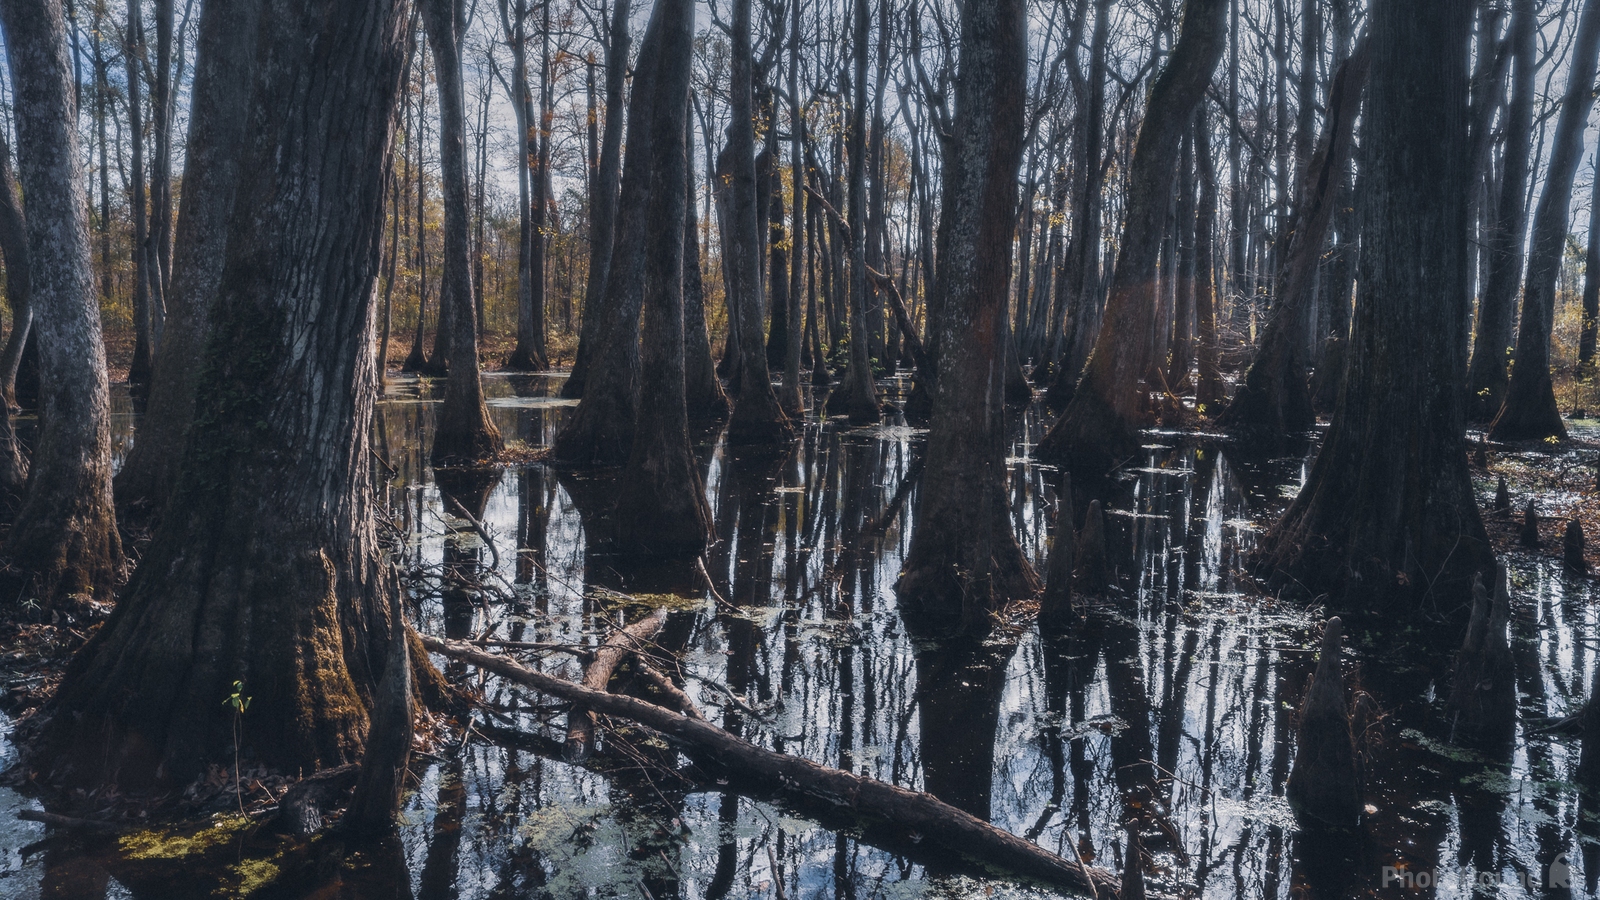 Image of Cypress Swamp by James Billings.